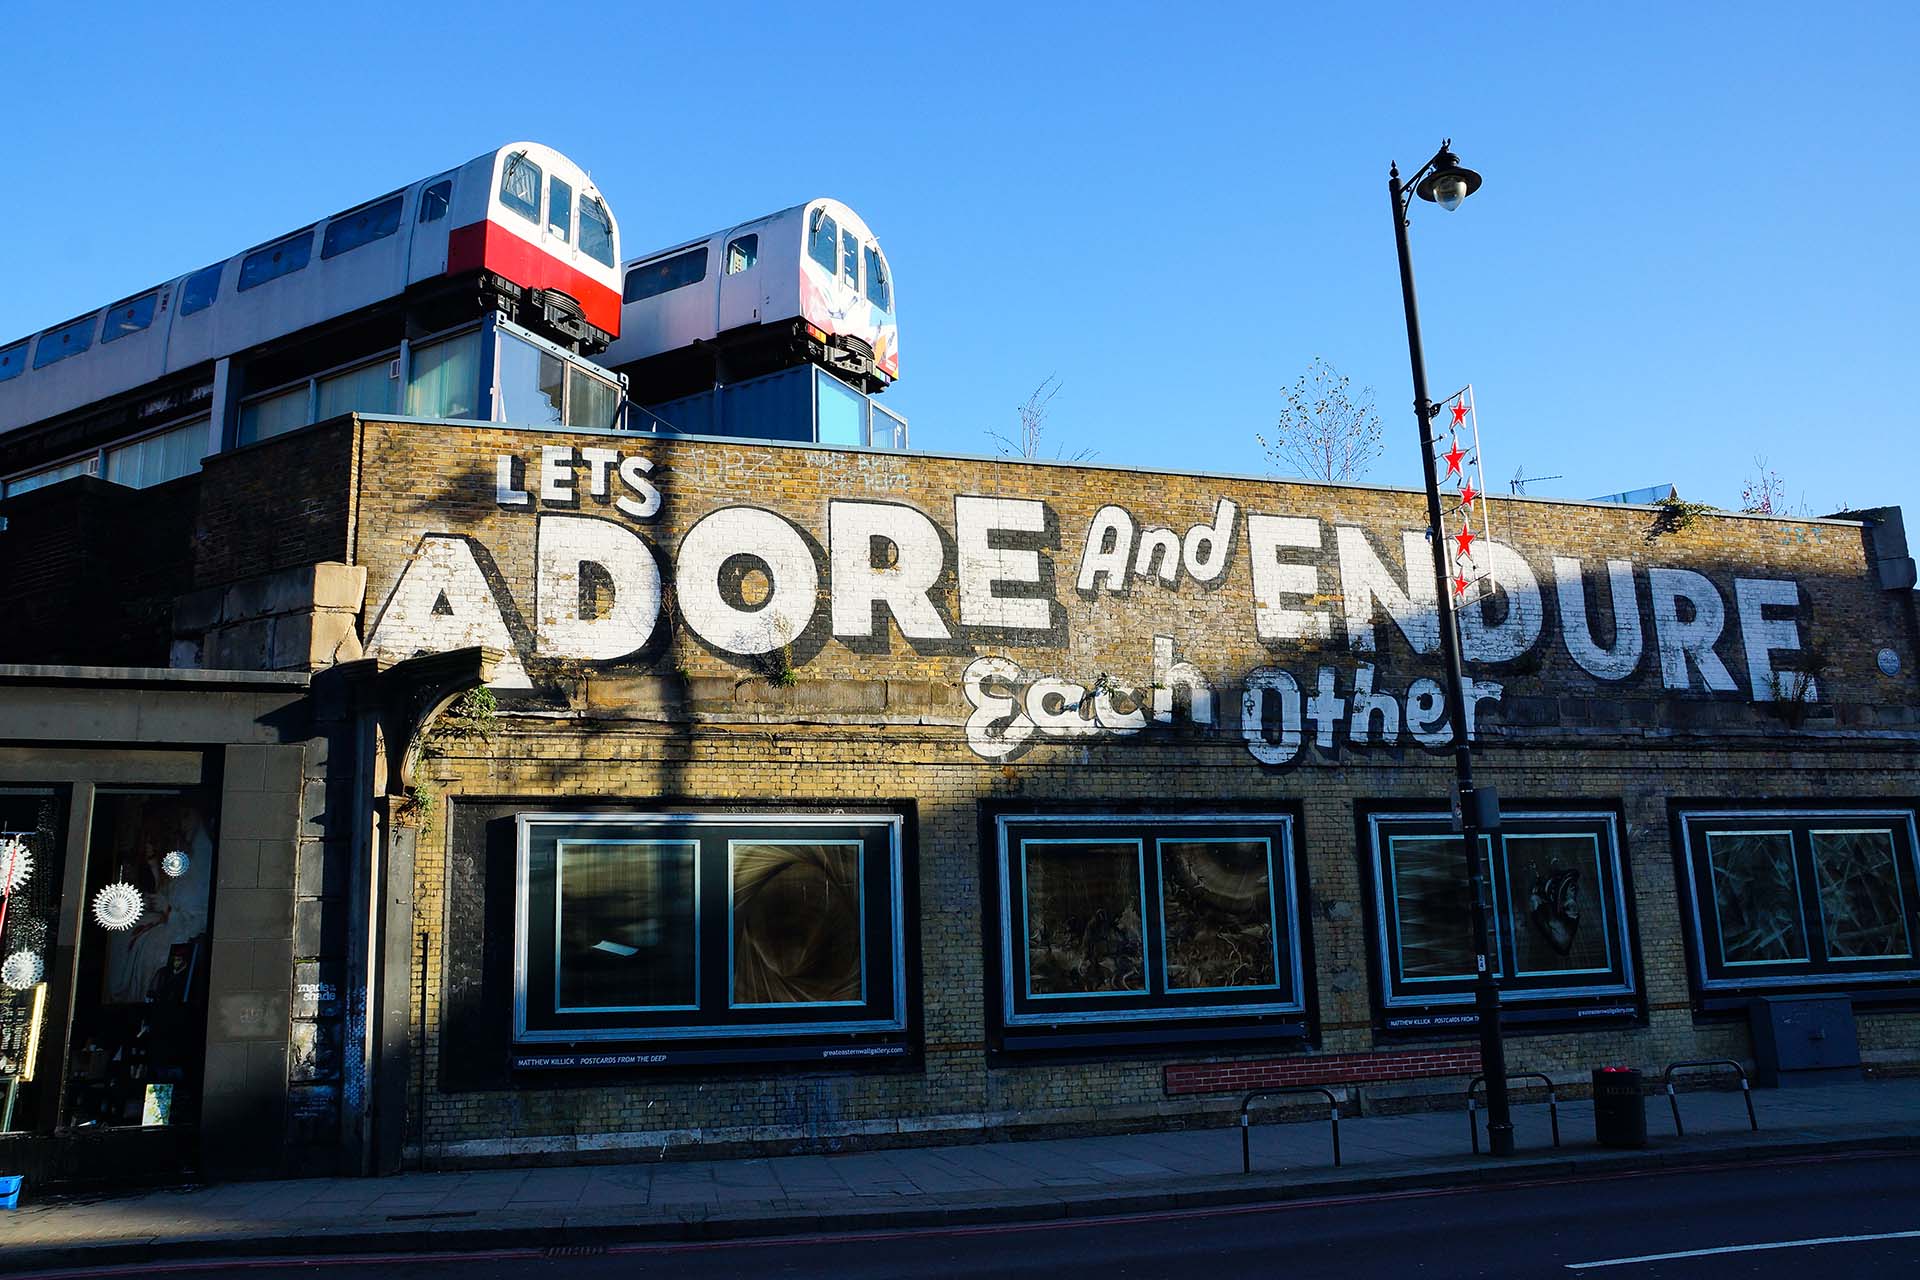 Stedentrip Londen: wat te doen in Shoreditch op zondag?